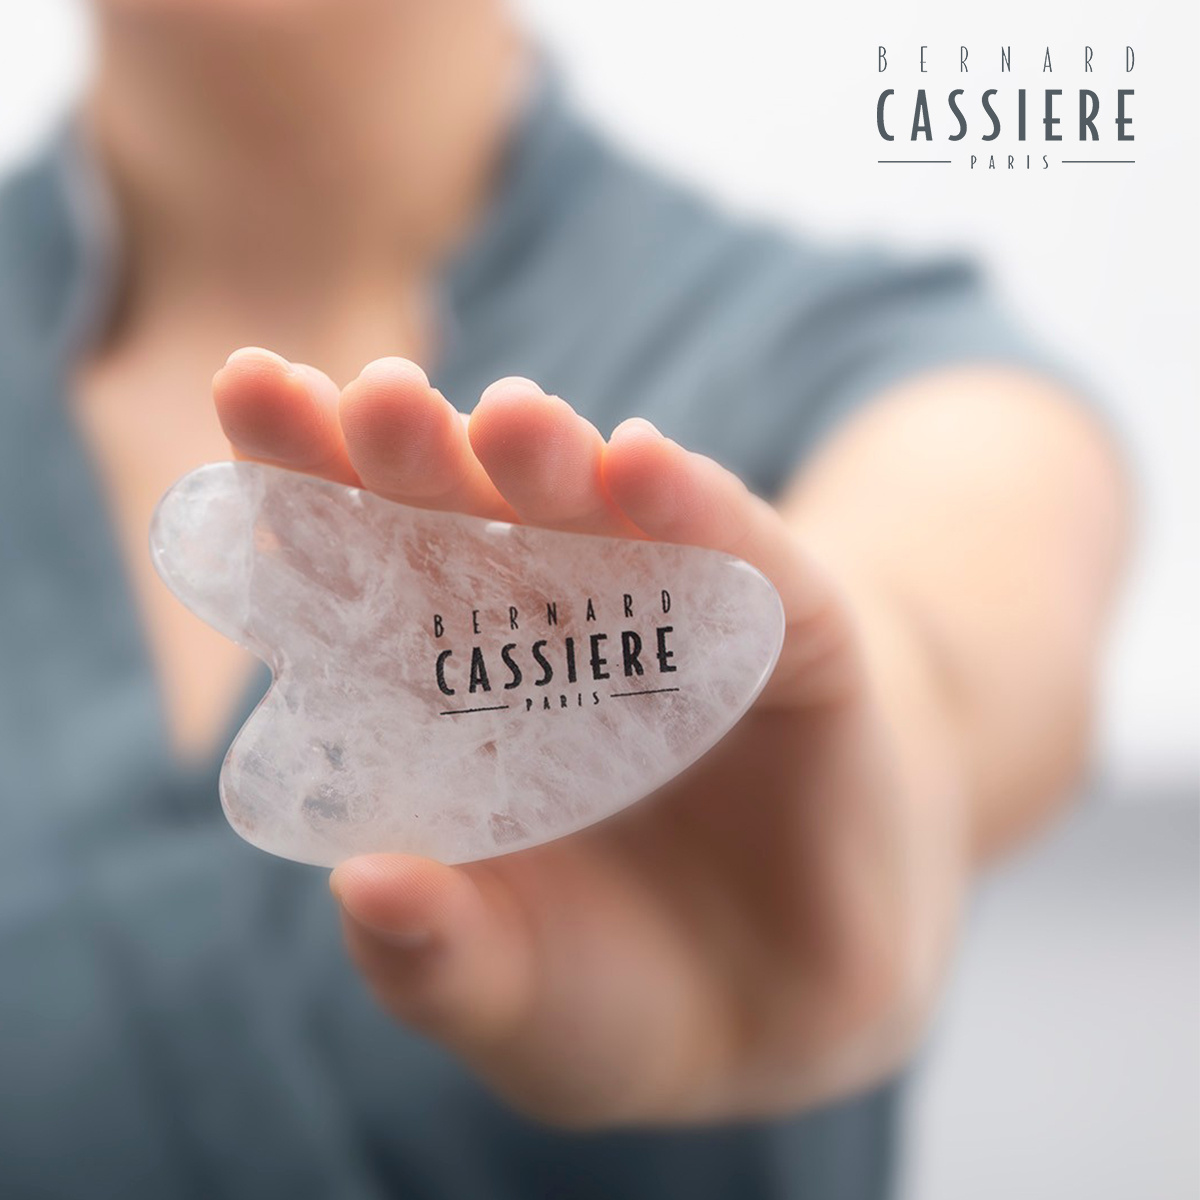 Bernard Cassière Bernard Cassiere Dull skins DETOX care  Detox Night Concentre 30ml + Quartz cristal  Gua-Sha stones.